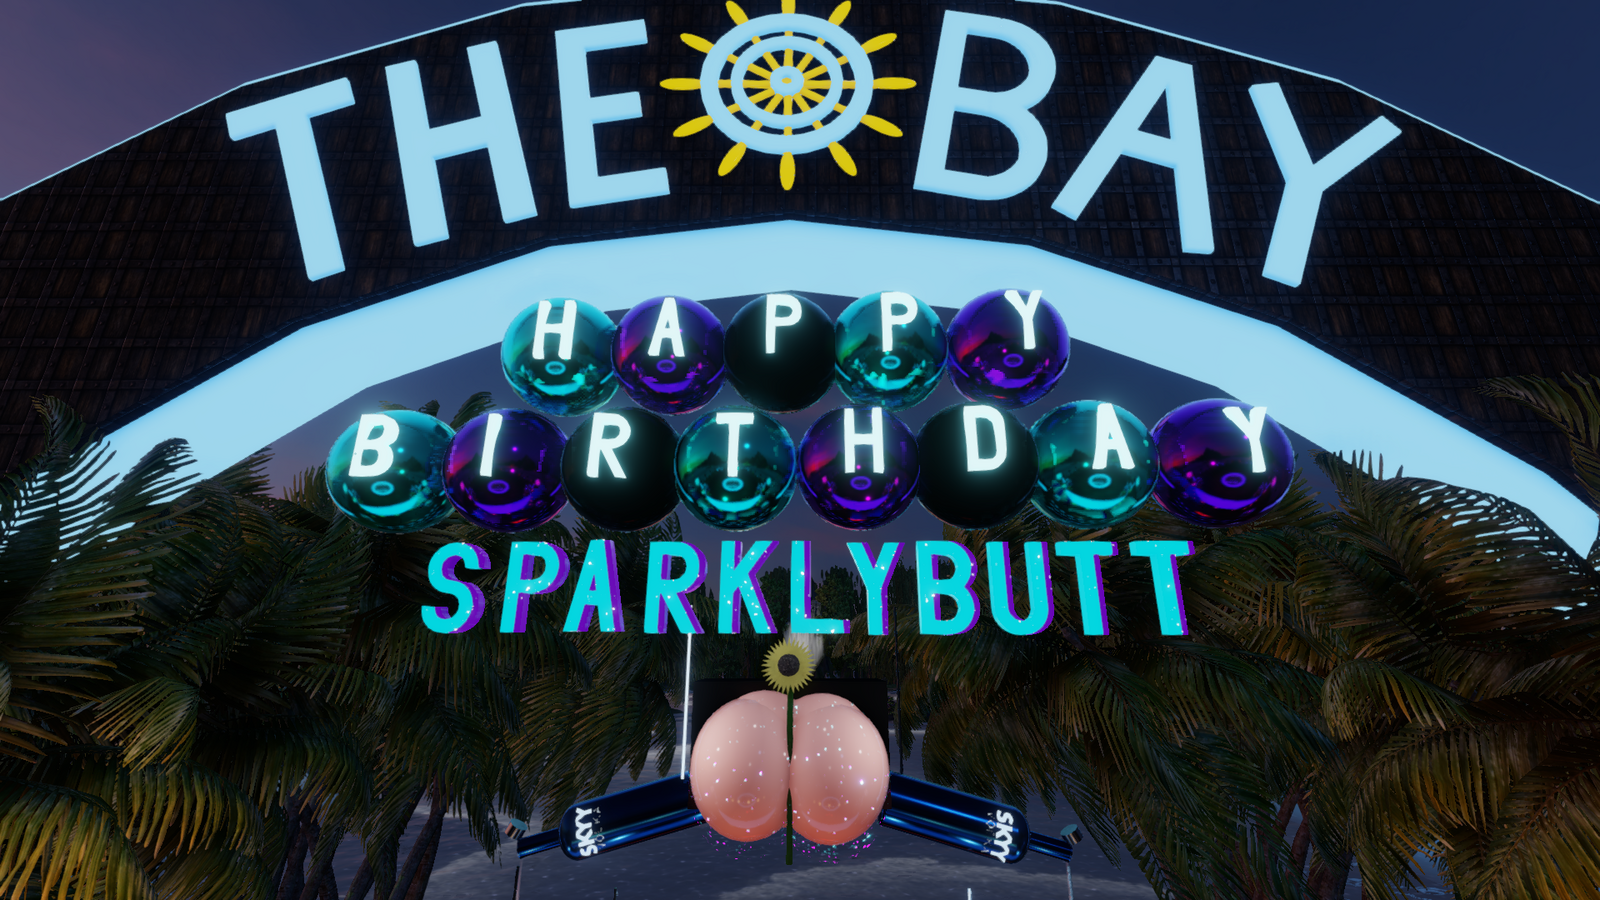 SparklyButt's Birthday Bash